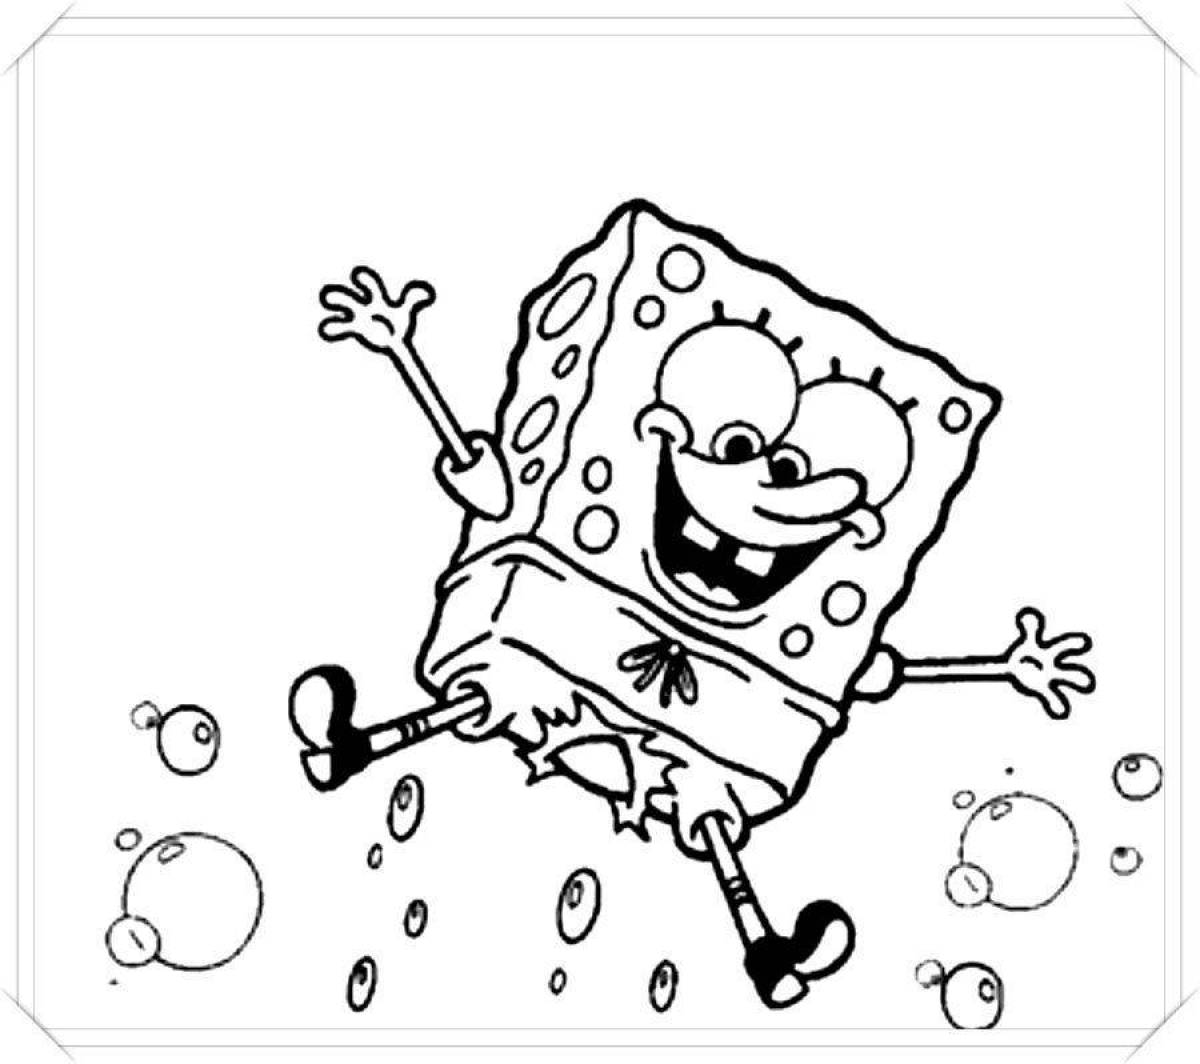 Fun coloring spongebob for kids